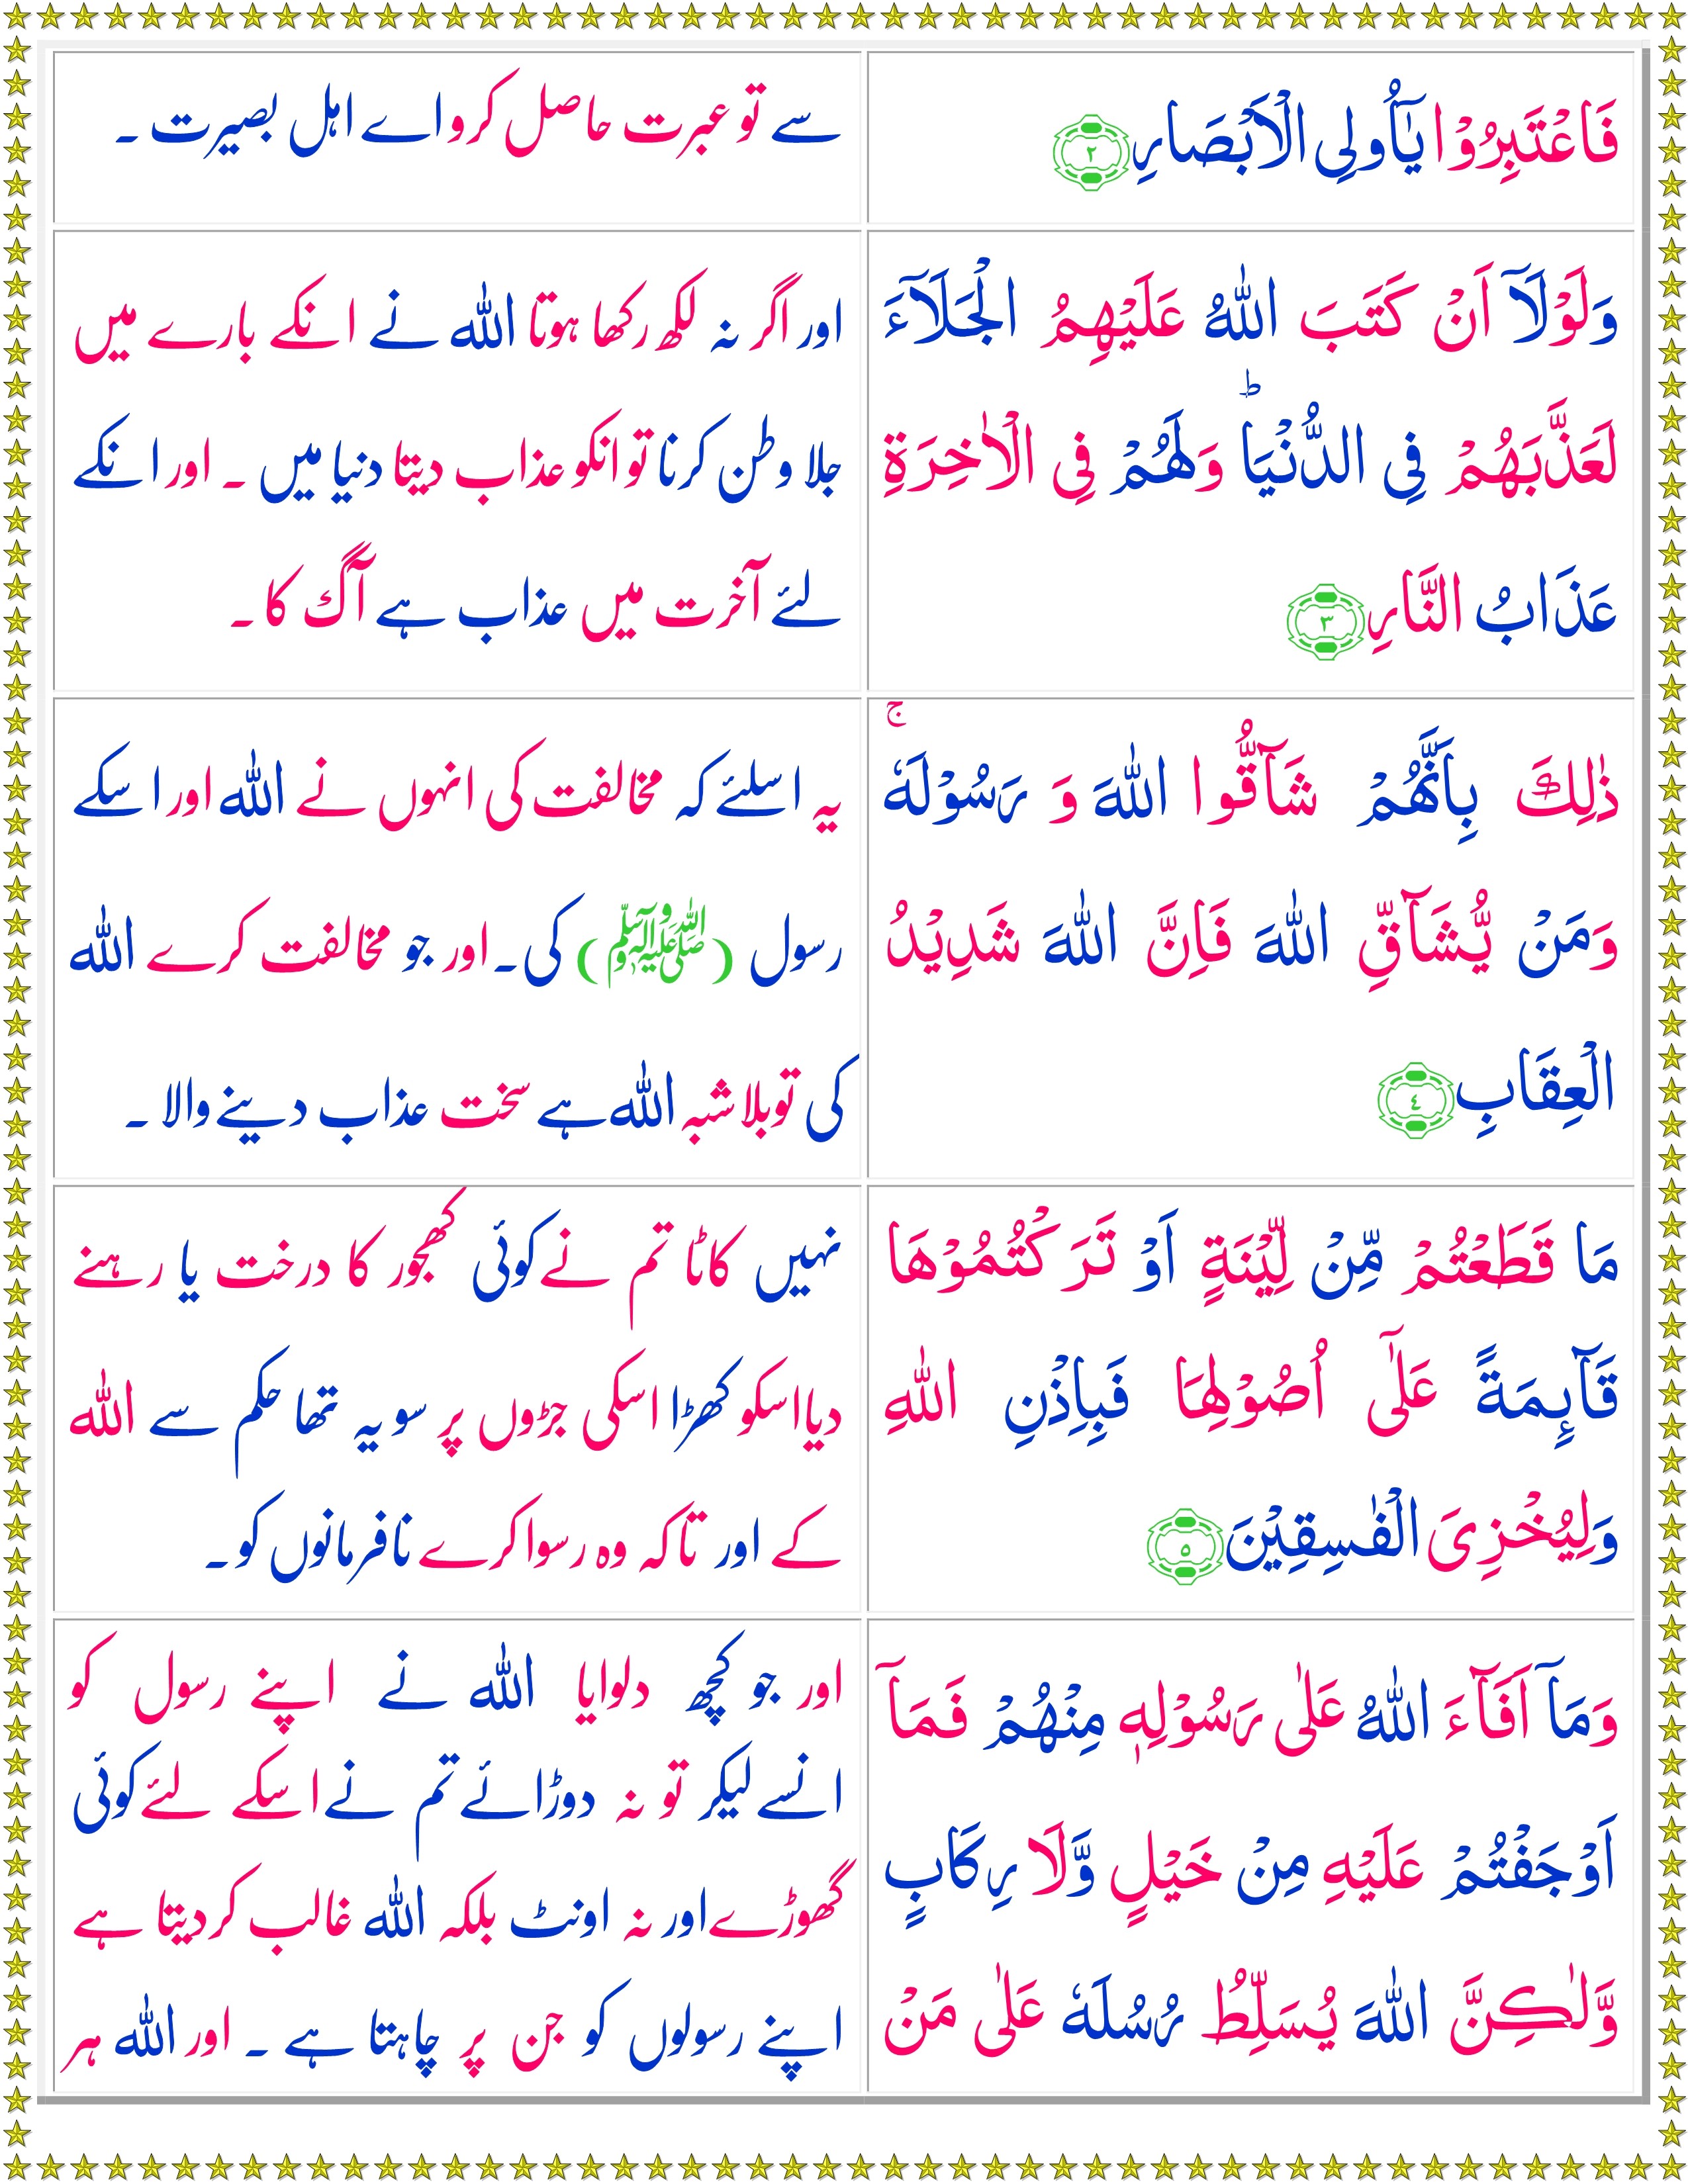 surah hashr last 3 ayats